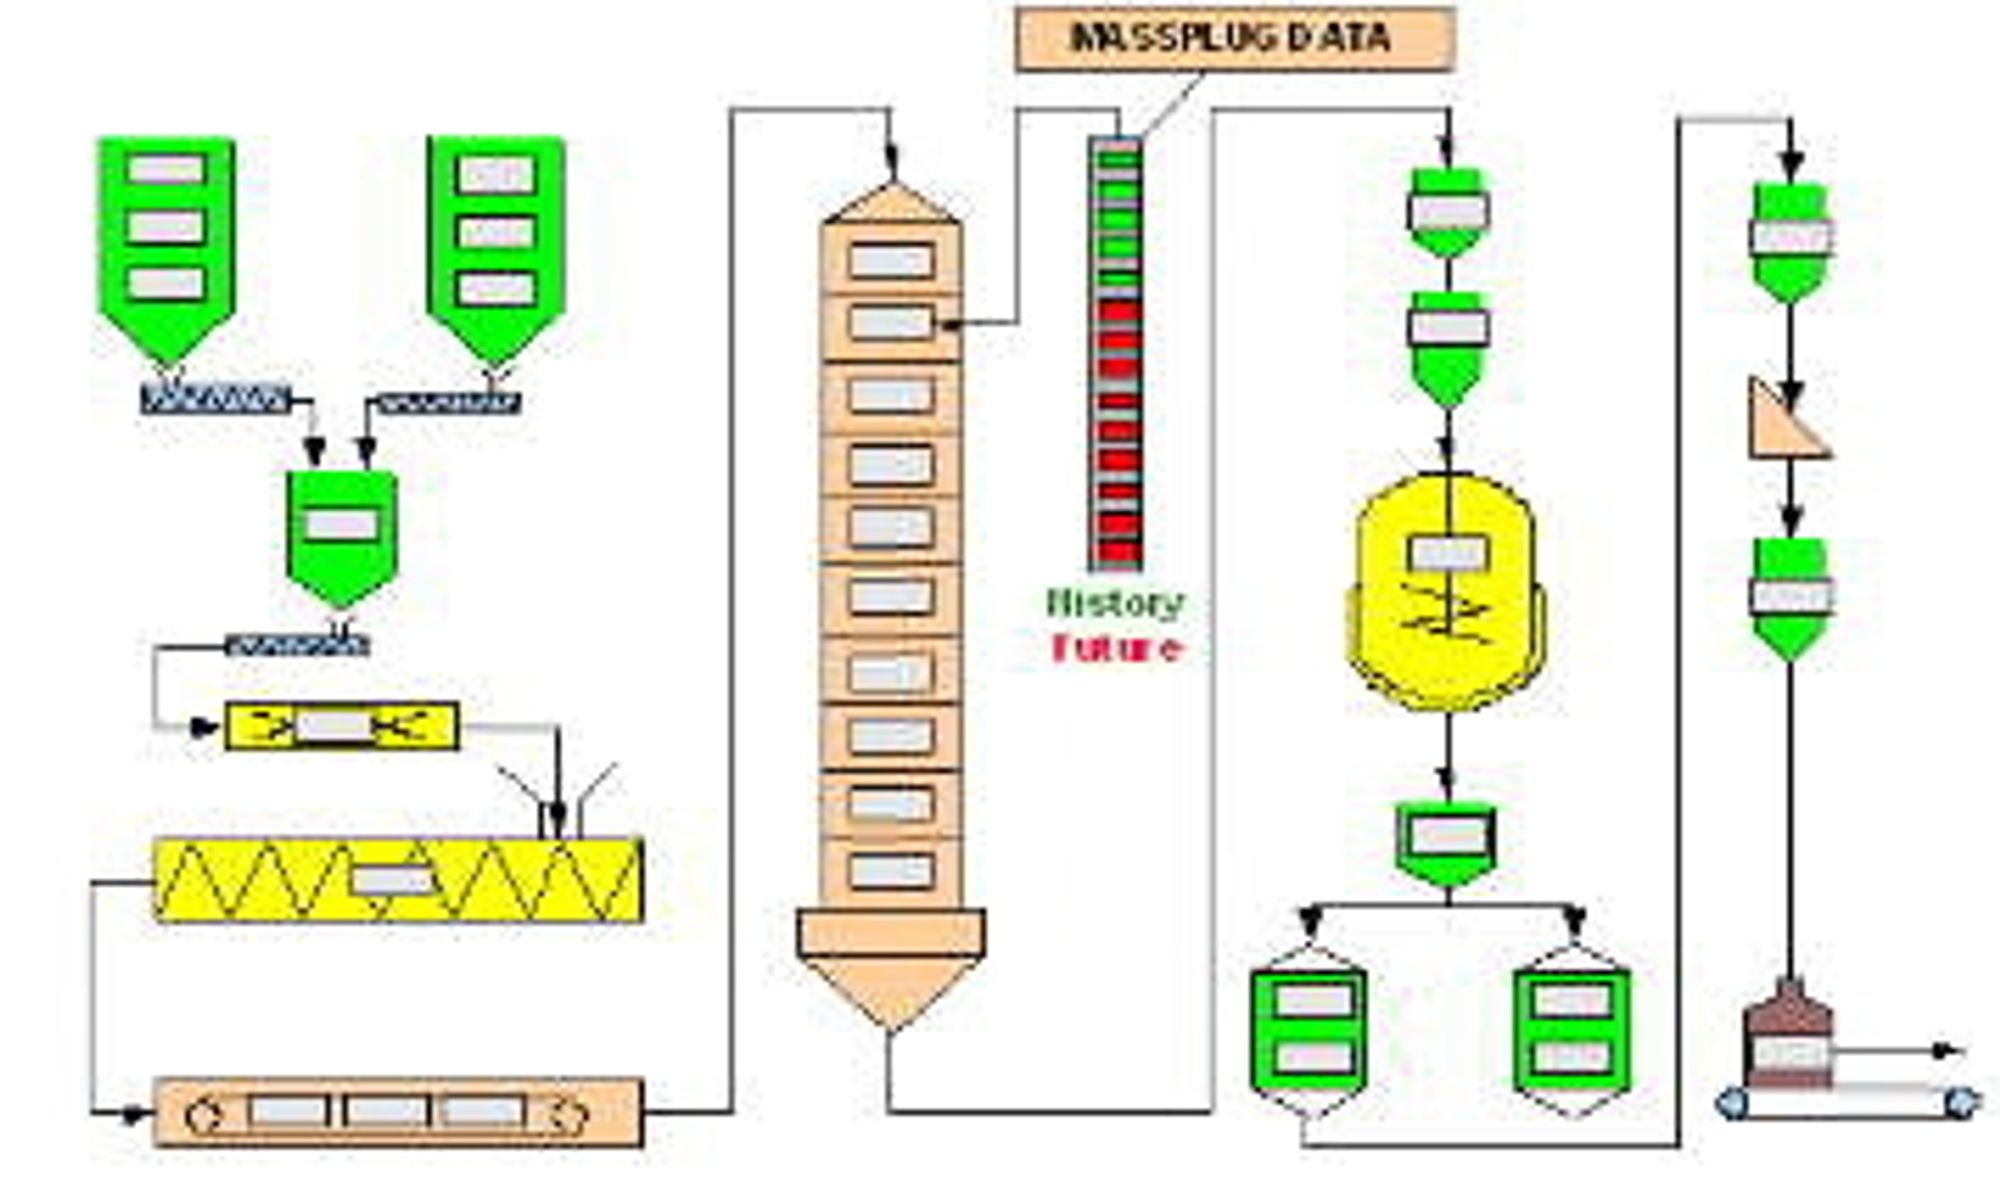 Eksempel på sporing i fôrproduksjonsfabrikk. De grå fir-kantene illustrerer masseplugger (Ill. Prediktor).